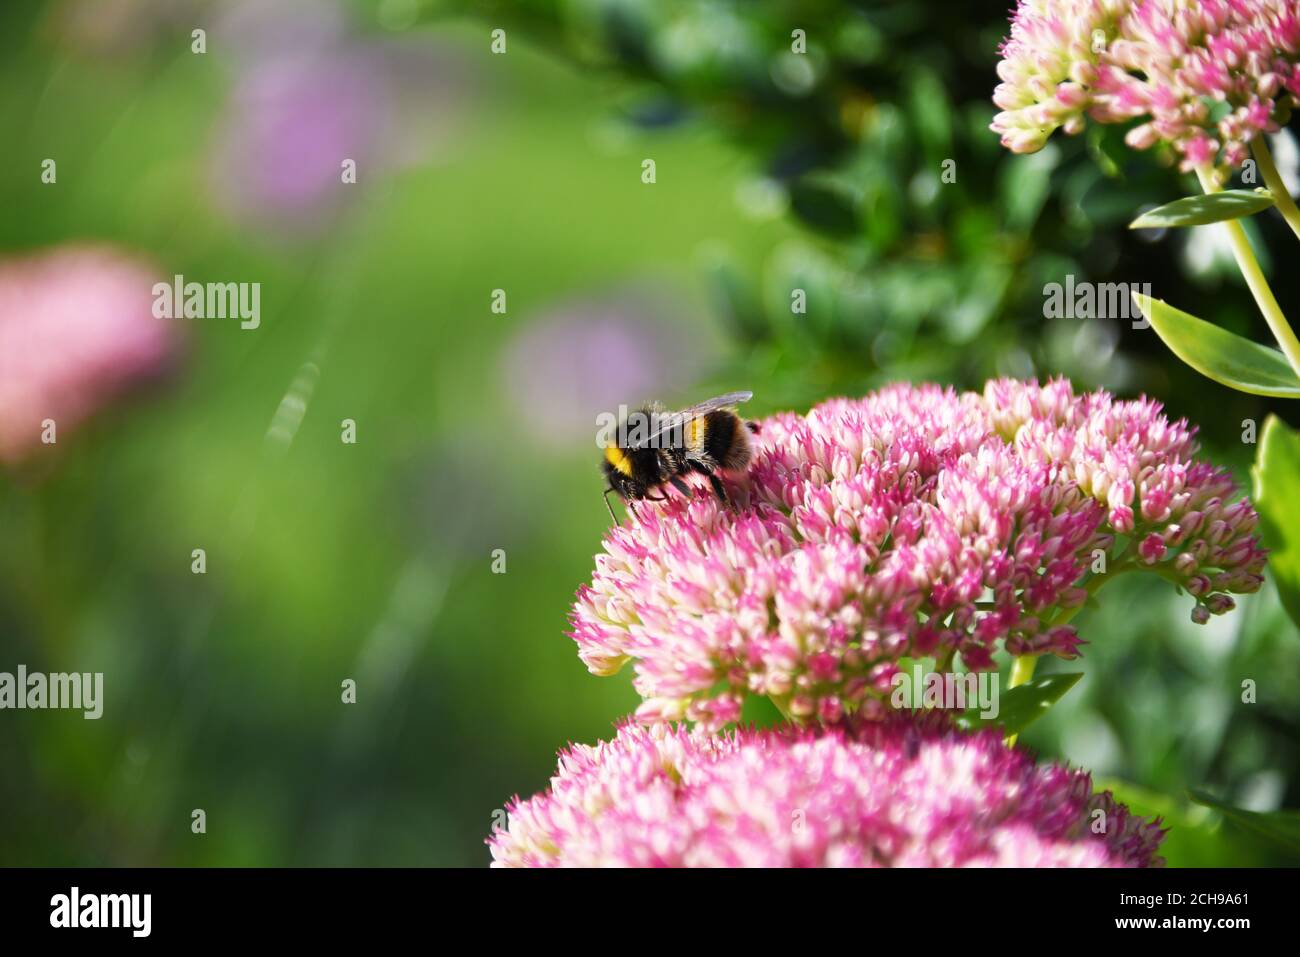 Weißschwanzbumblebee (Bombus lucorum), die sich auf Nektar einer rosa Blume (Hylotephium ‘Autumn Joy’) ernährt. Aufgenommen in einem Wiltshire Garten. Stockfoto